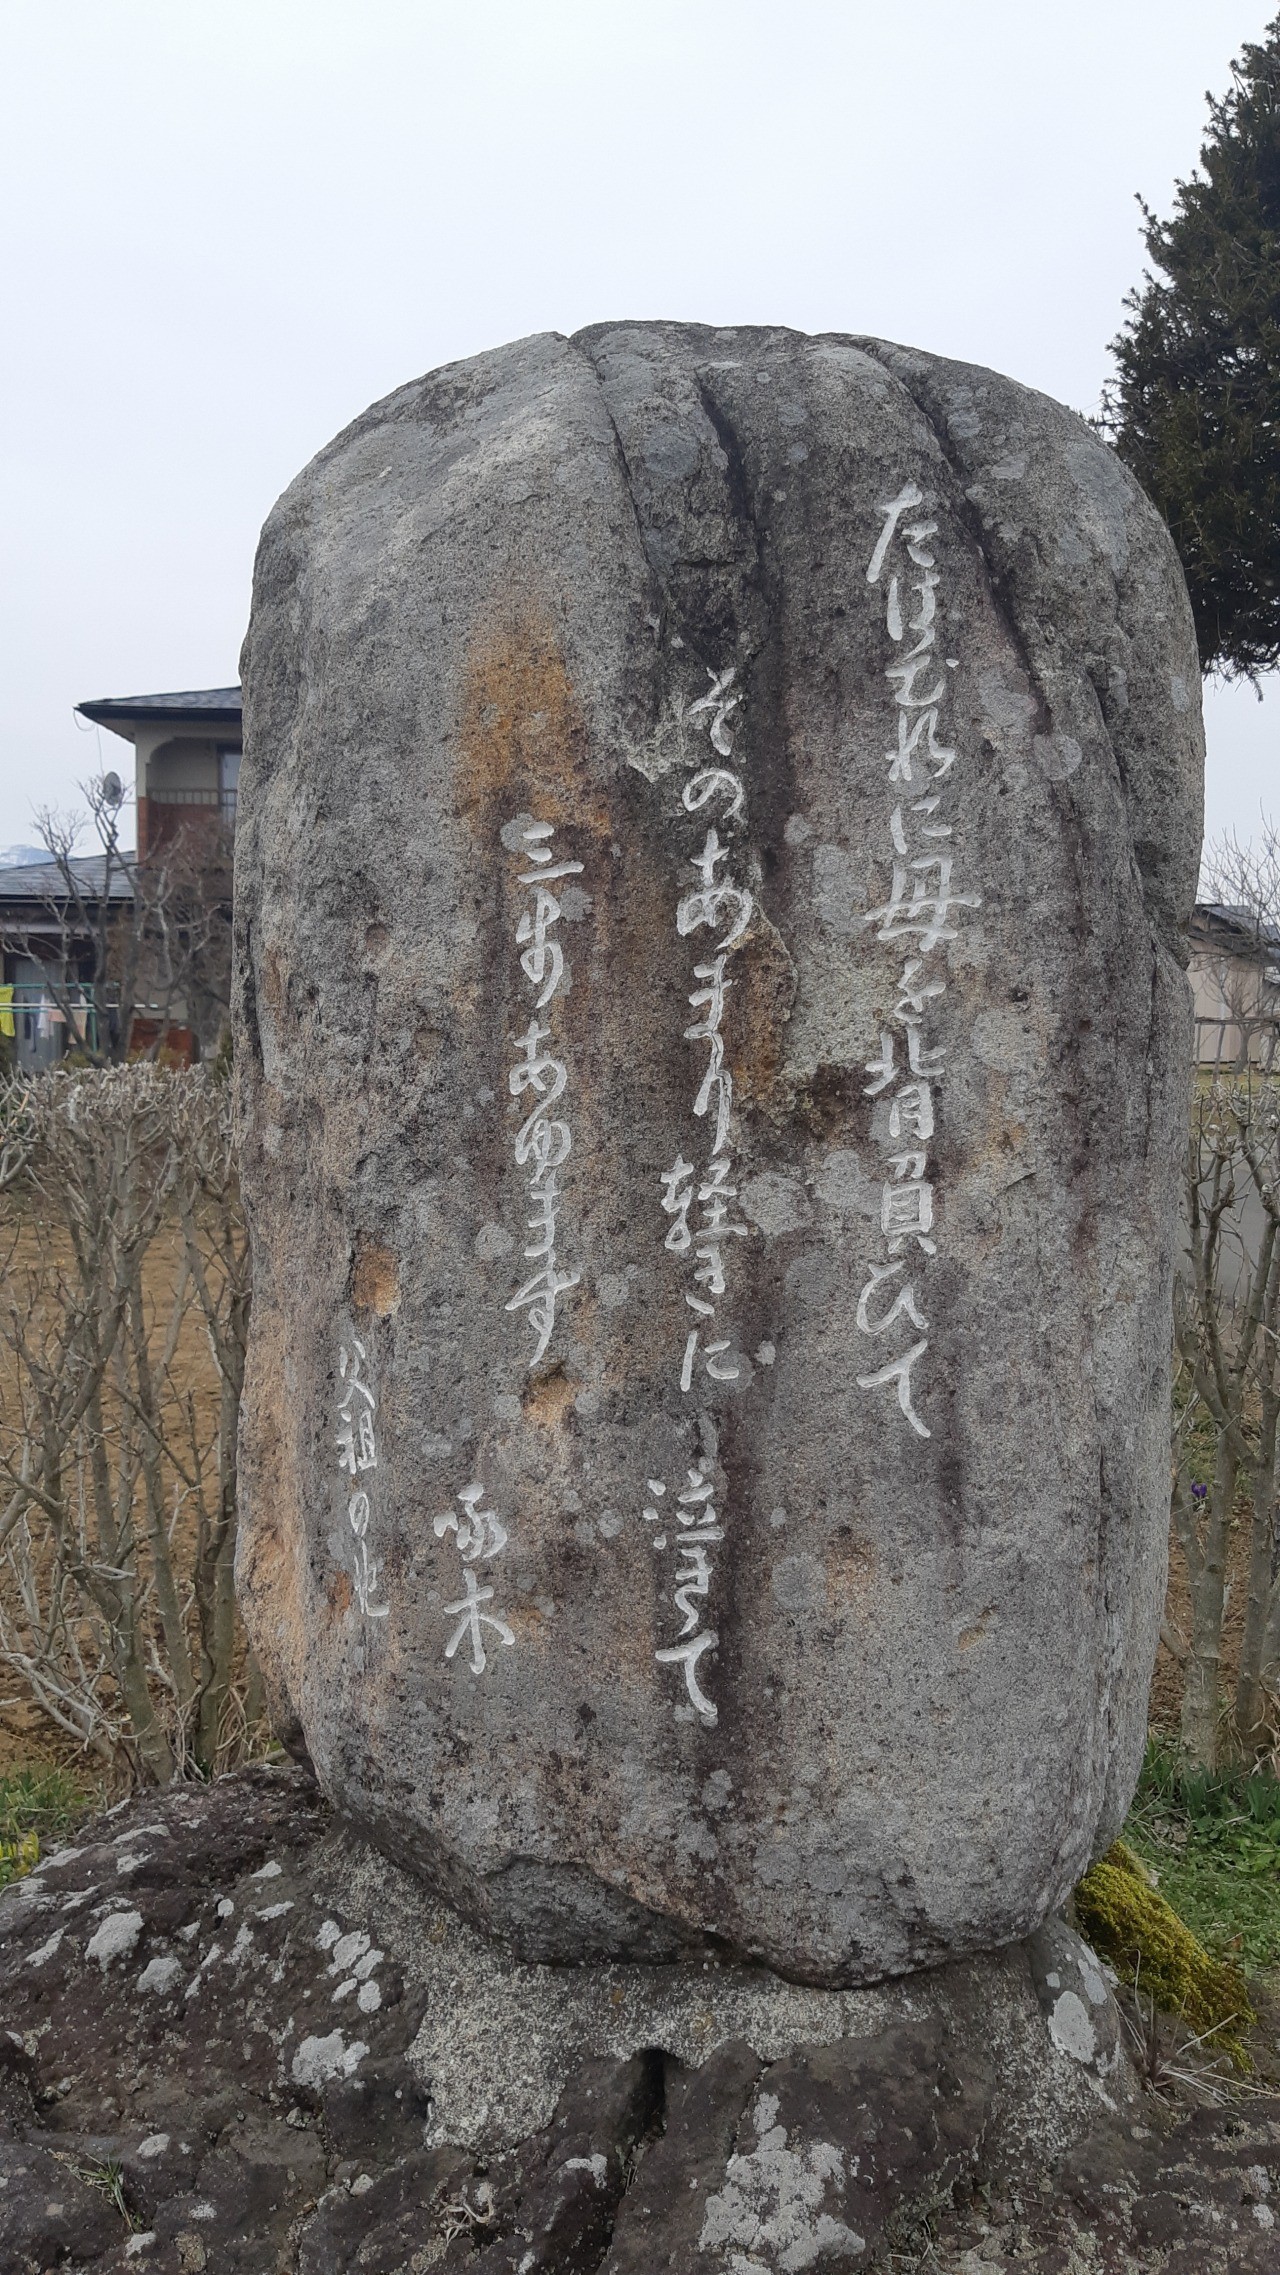 Visit monuments of Ishikawa Takuboku, Miyazawa Kenji, and Ema Akiko, poets related to the local area.